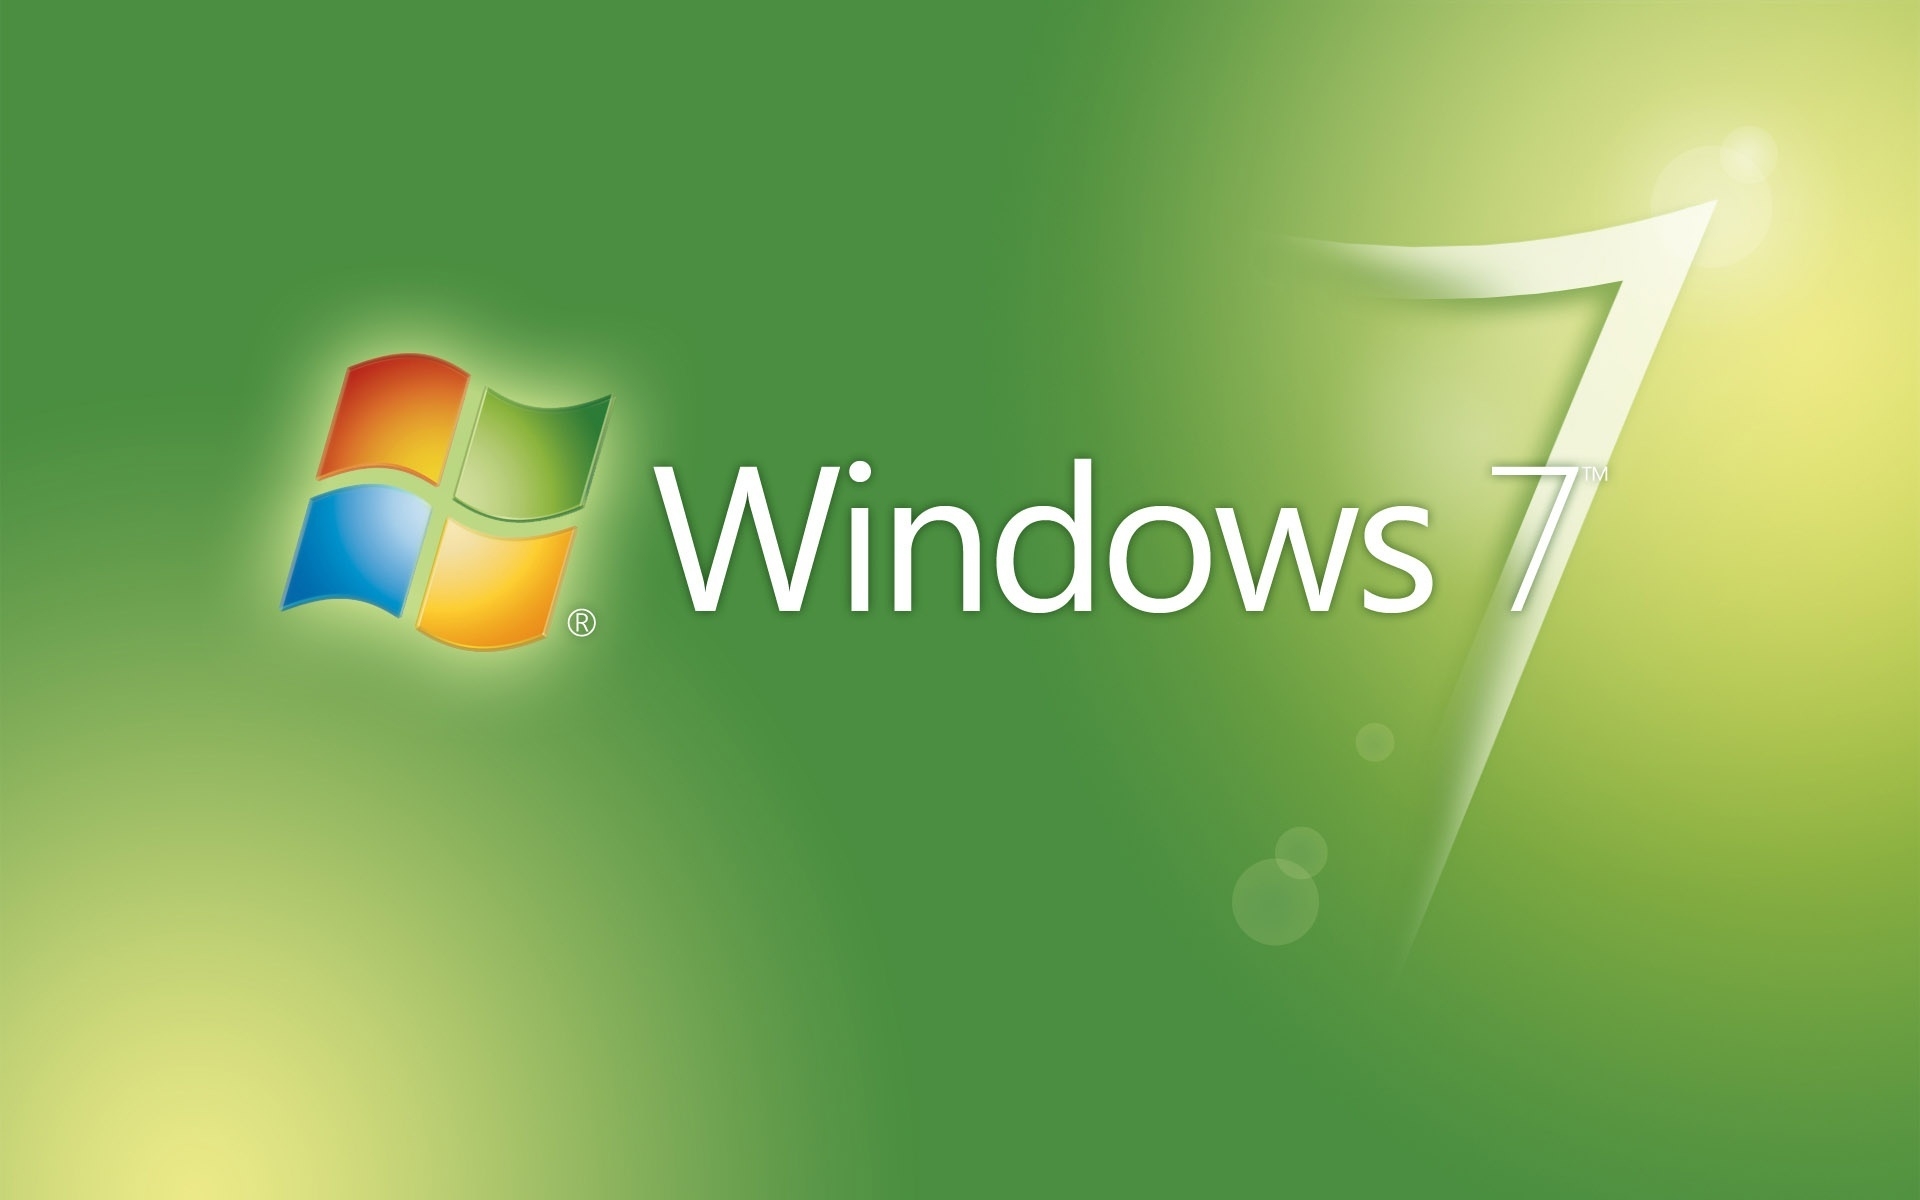 Làm mới cho không gian máy tính của bạn với một hình nền desktop Windows 7 màu xanh lá đẹp tuyệt vời. Sắc xanh tựa như nguồn sống của thiên nhiên, mang lại cho bạn cảm giác thoải mái và bình yên trong mỗi lần sử dụng. Hãy tải về và hưởng thụ những khoảnh khắc thư giãn tuyệt vời với hình nền đẹp này.